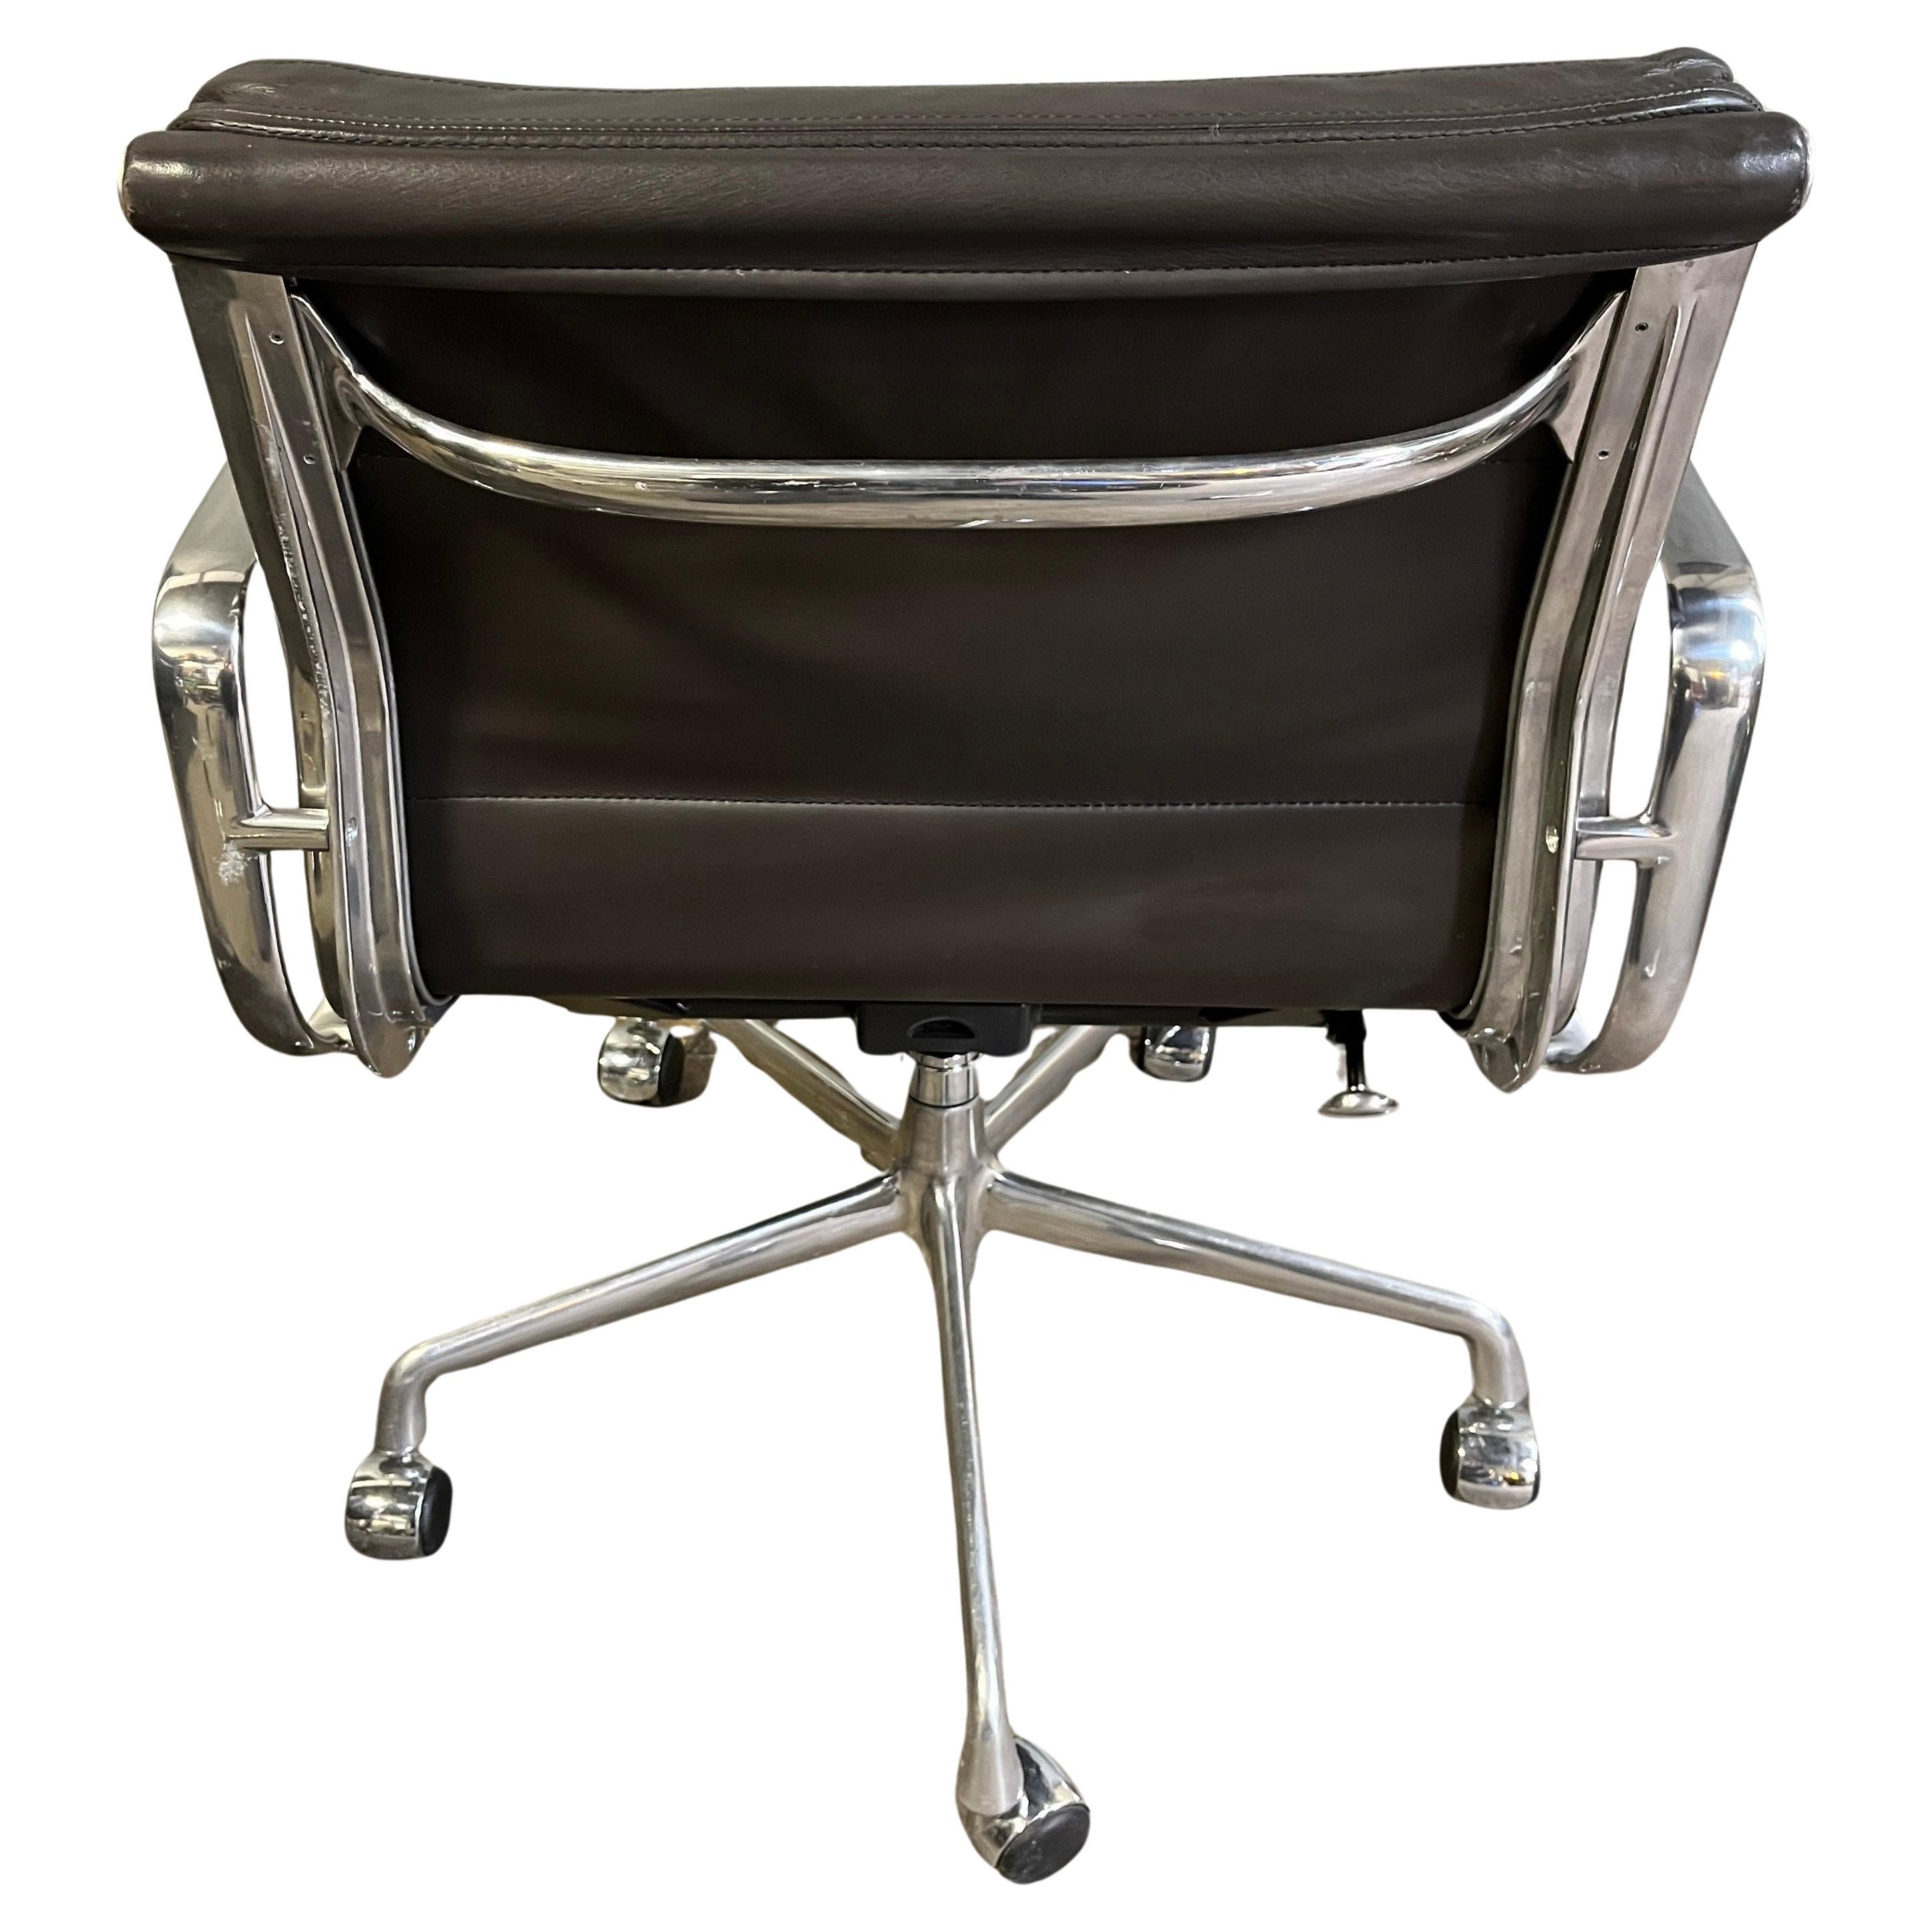 Pour votre considération est cet authentique Eames pour Herman Miller vintage soft pad chaises en cuir brun foncé. Inclinaison et hauteur réglables avec élévation manuelle. Ces exemples authentiques sont des icônes du design moderne du milieu du